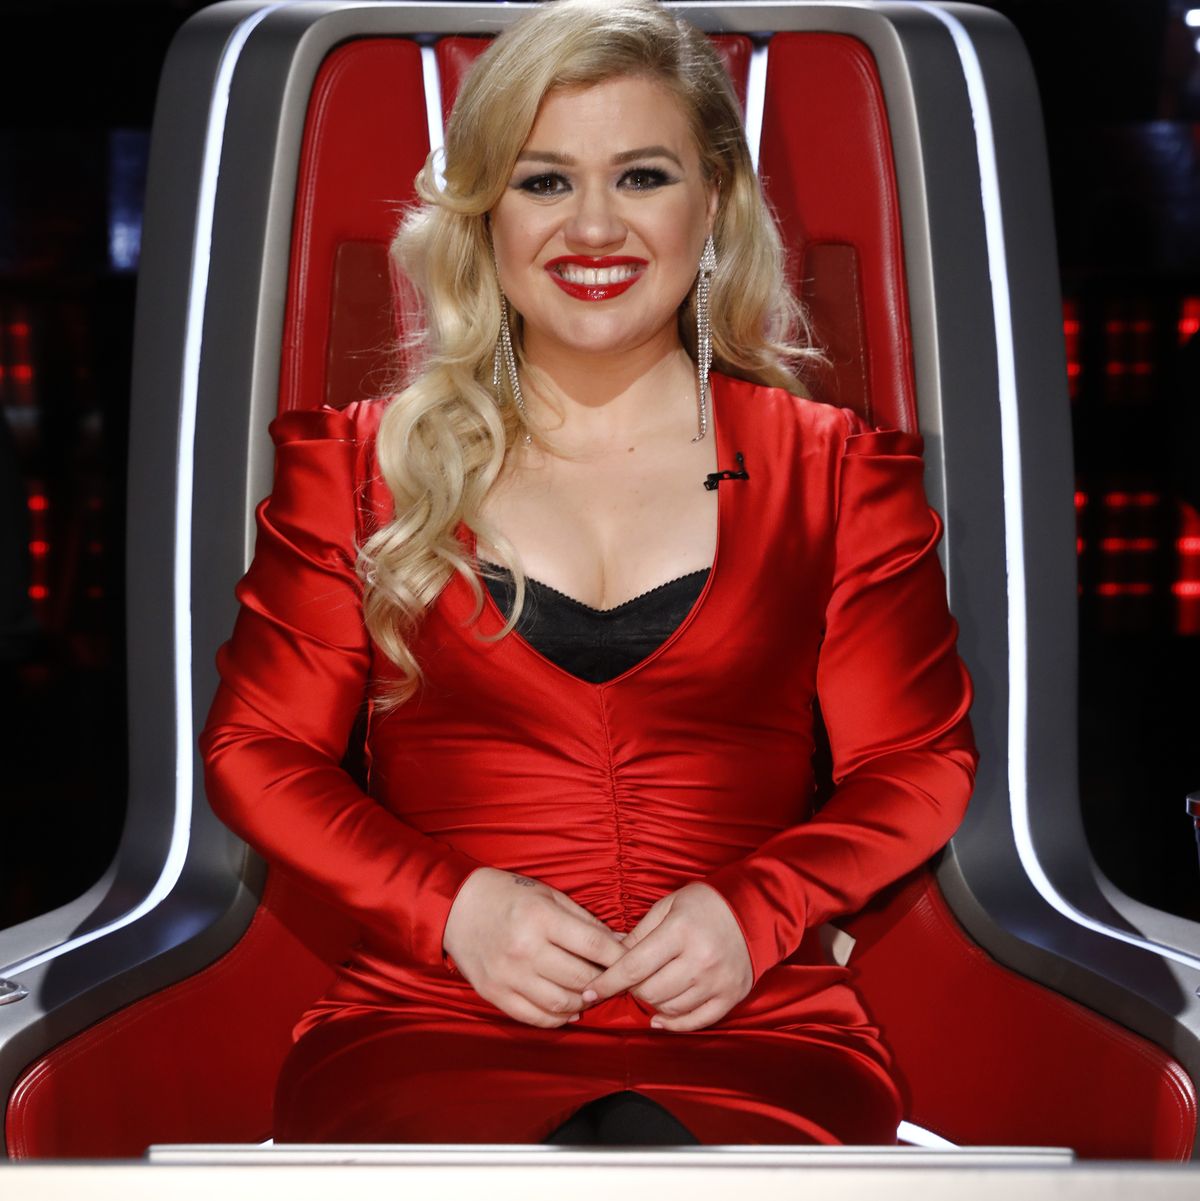 Kelly Clarkson on The Voice - Season 16